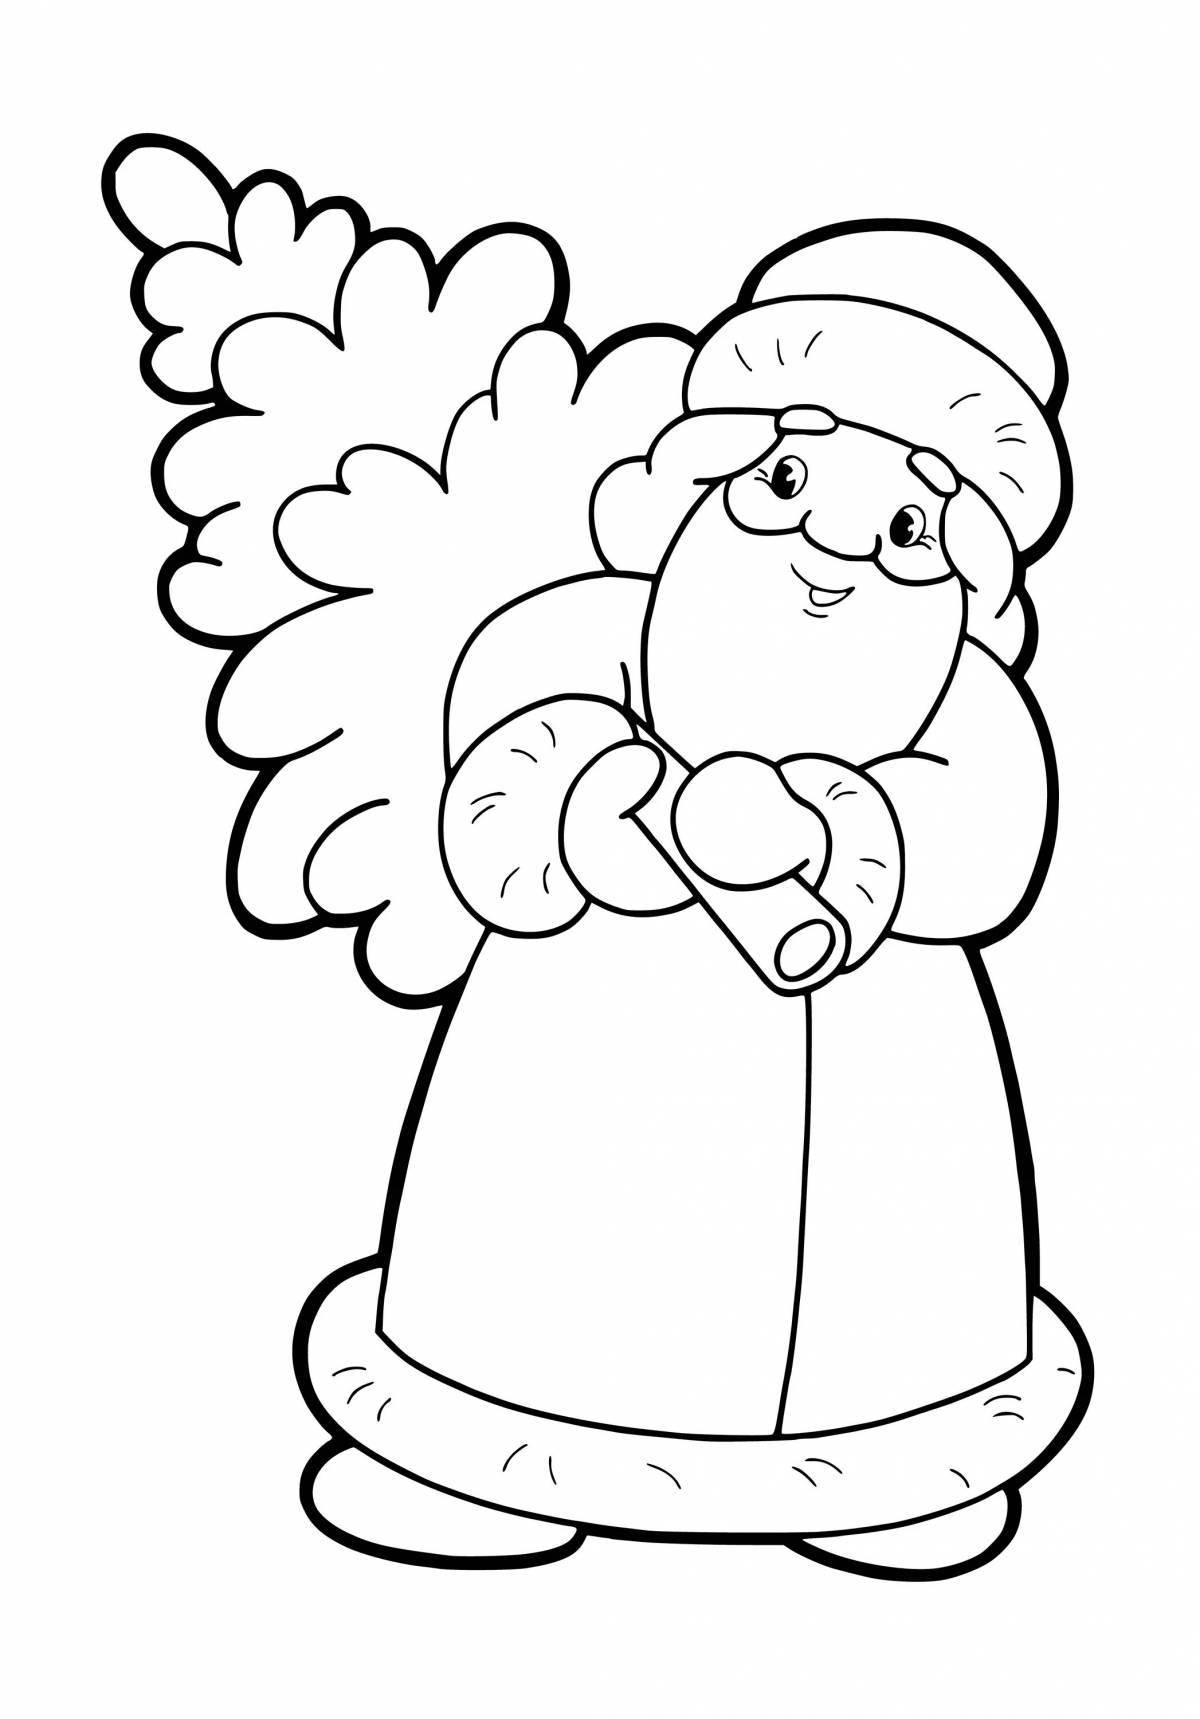 Santa Claus holiday coloring book